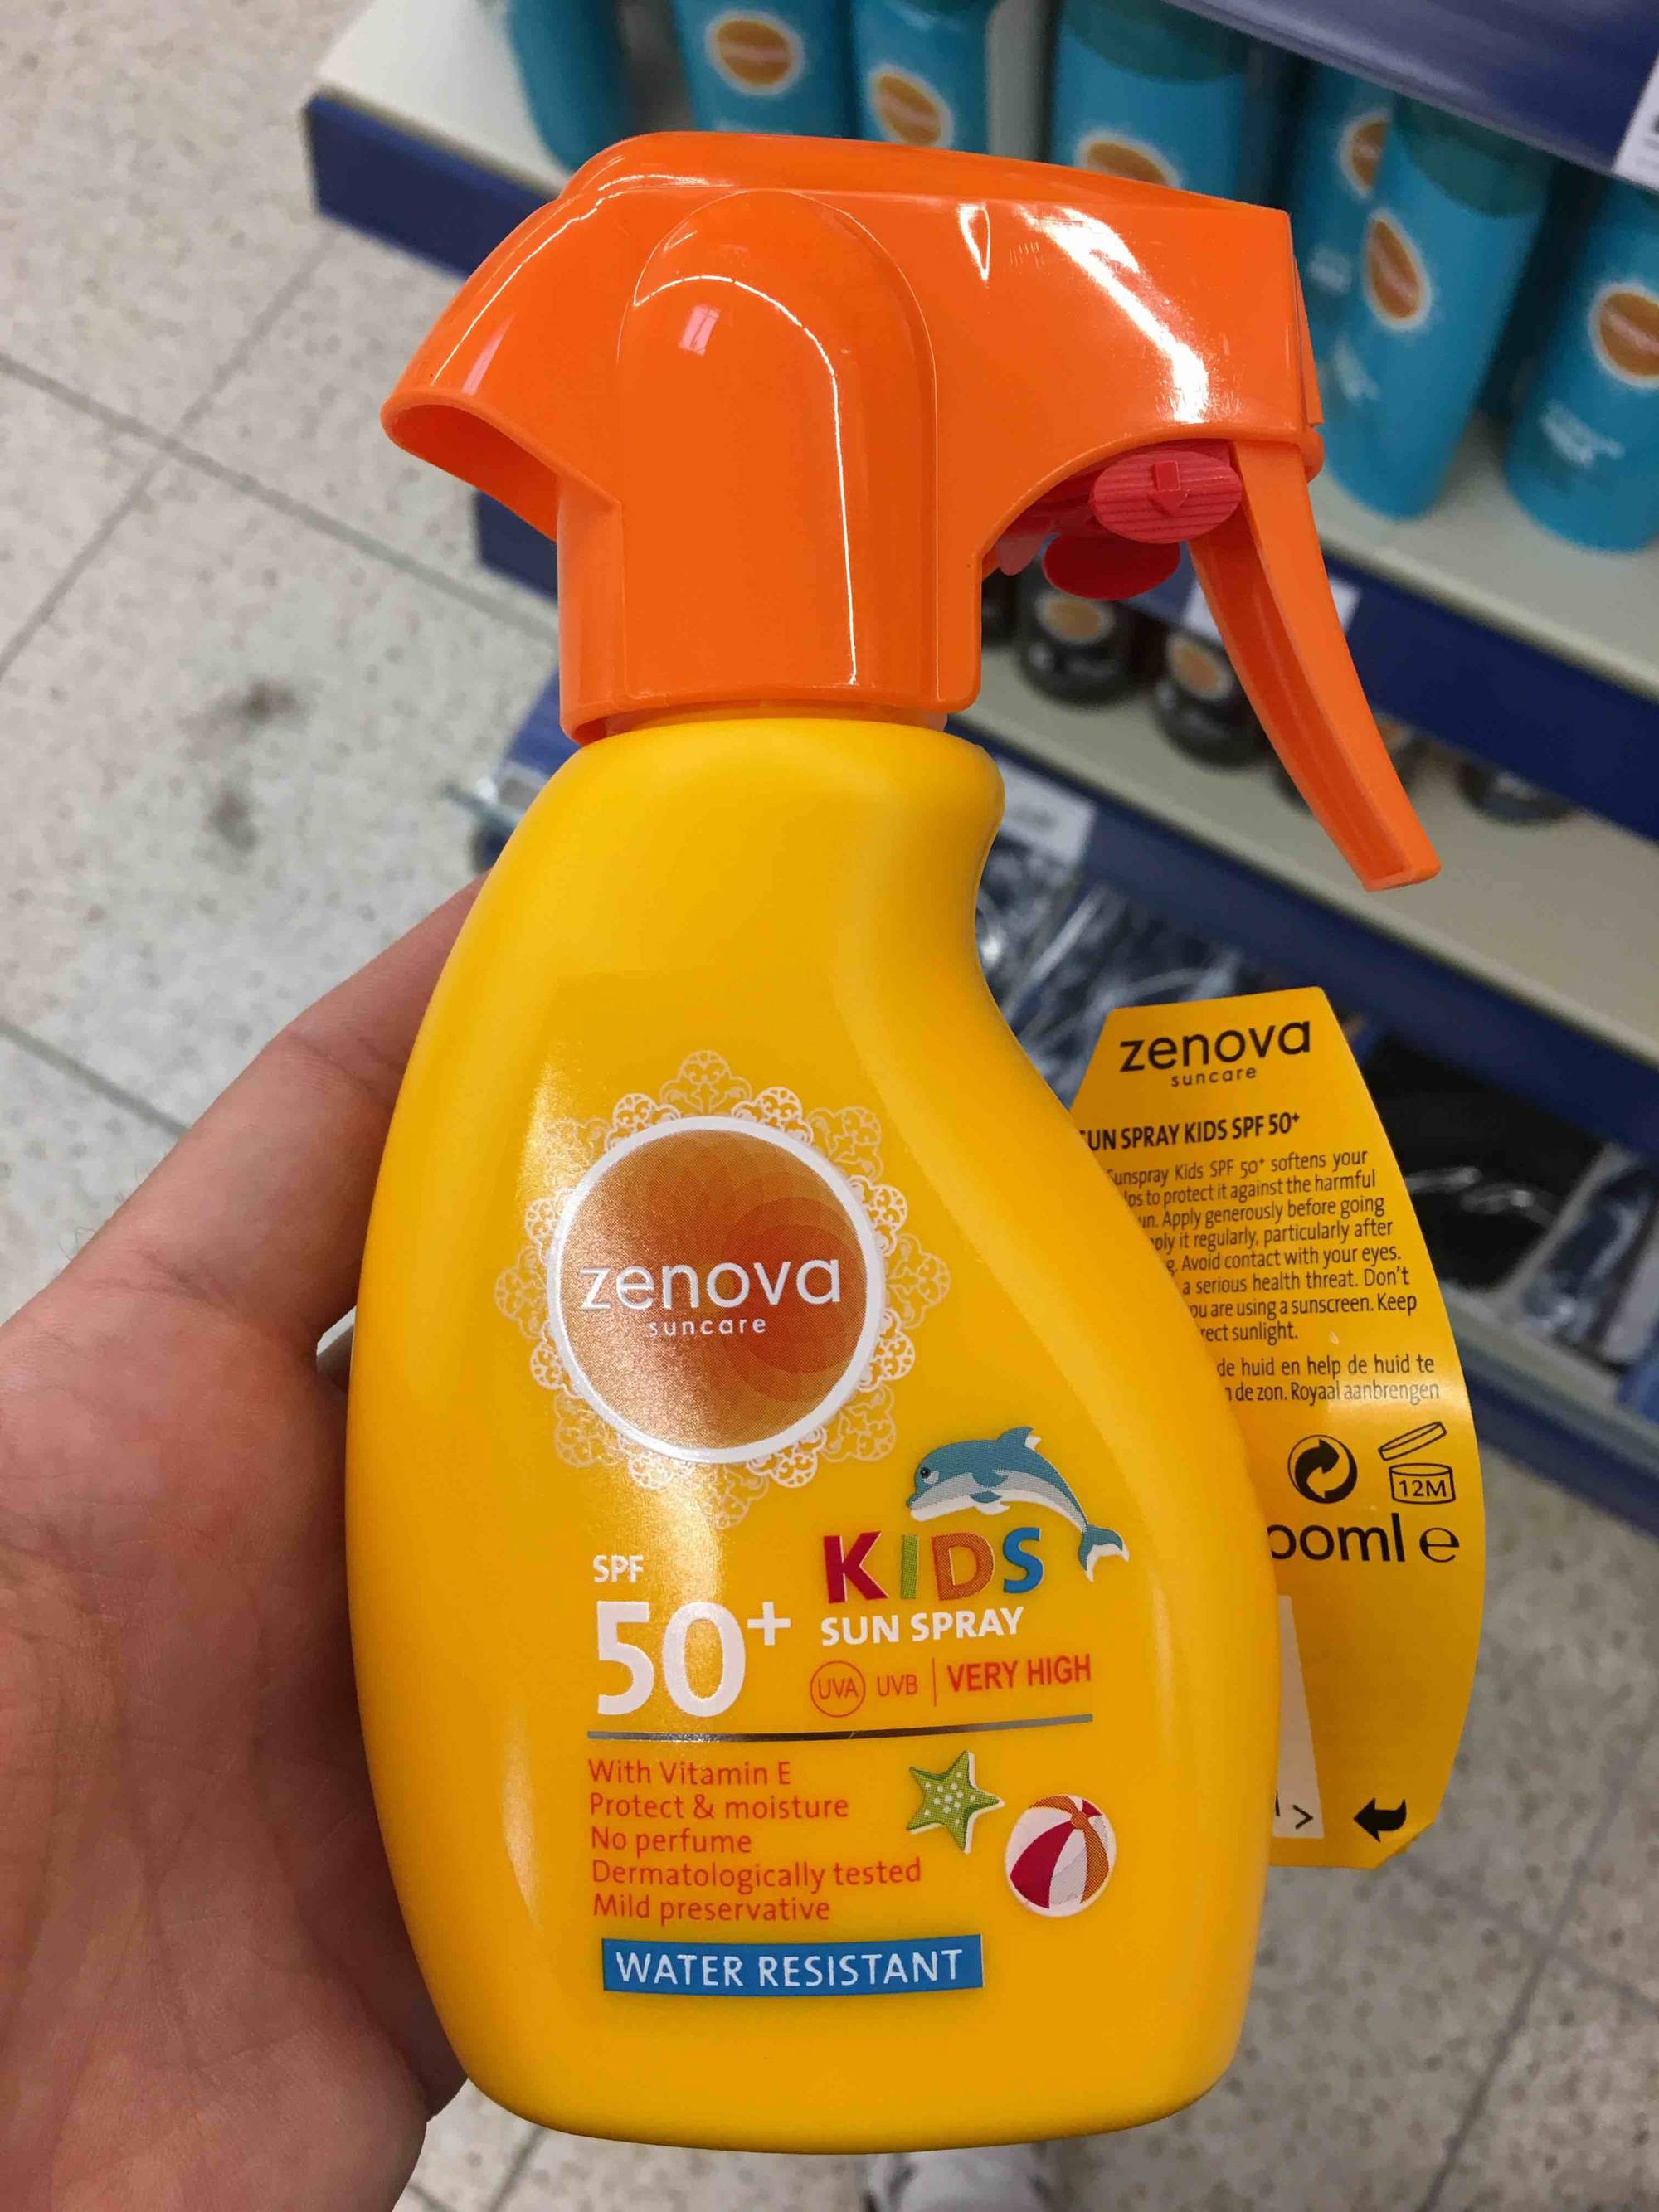 ZENOVA - Sun spray kids SPF 50+